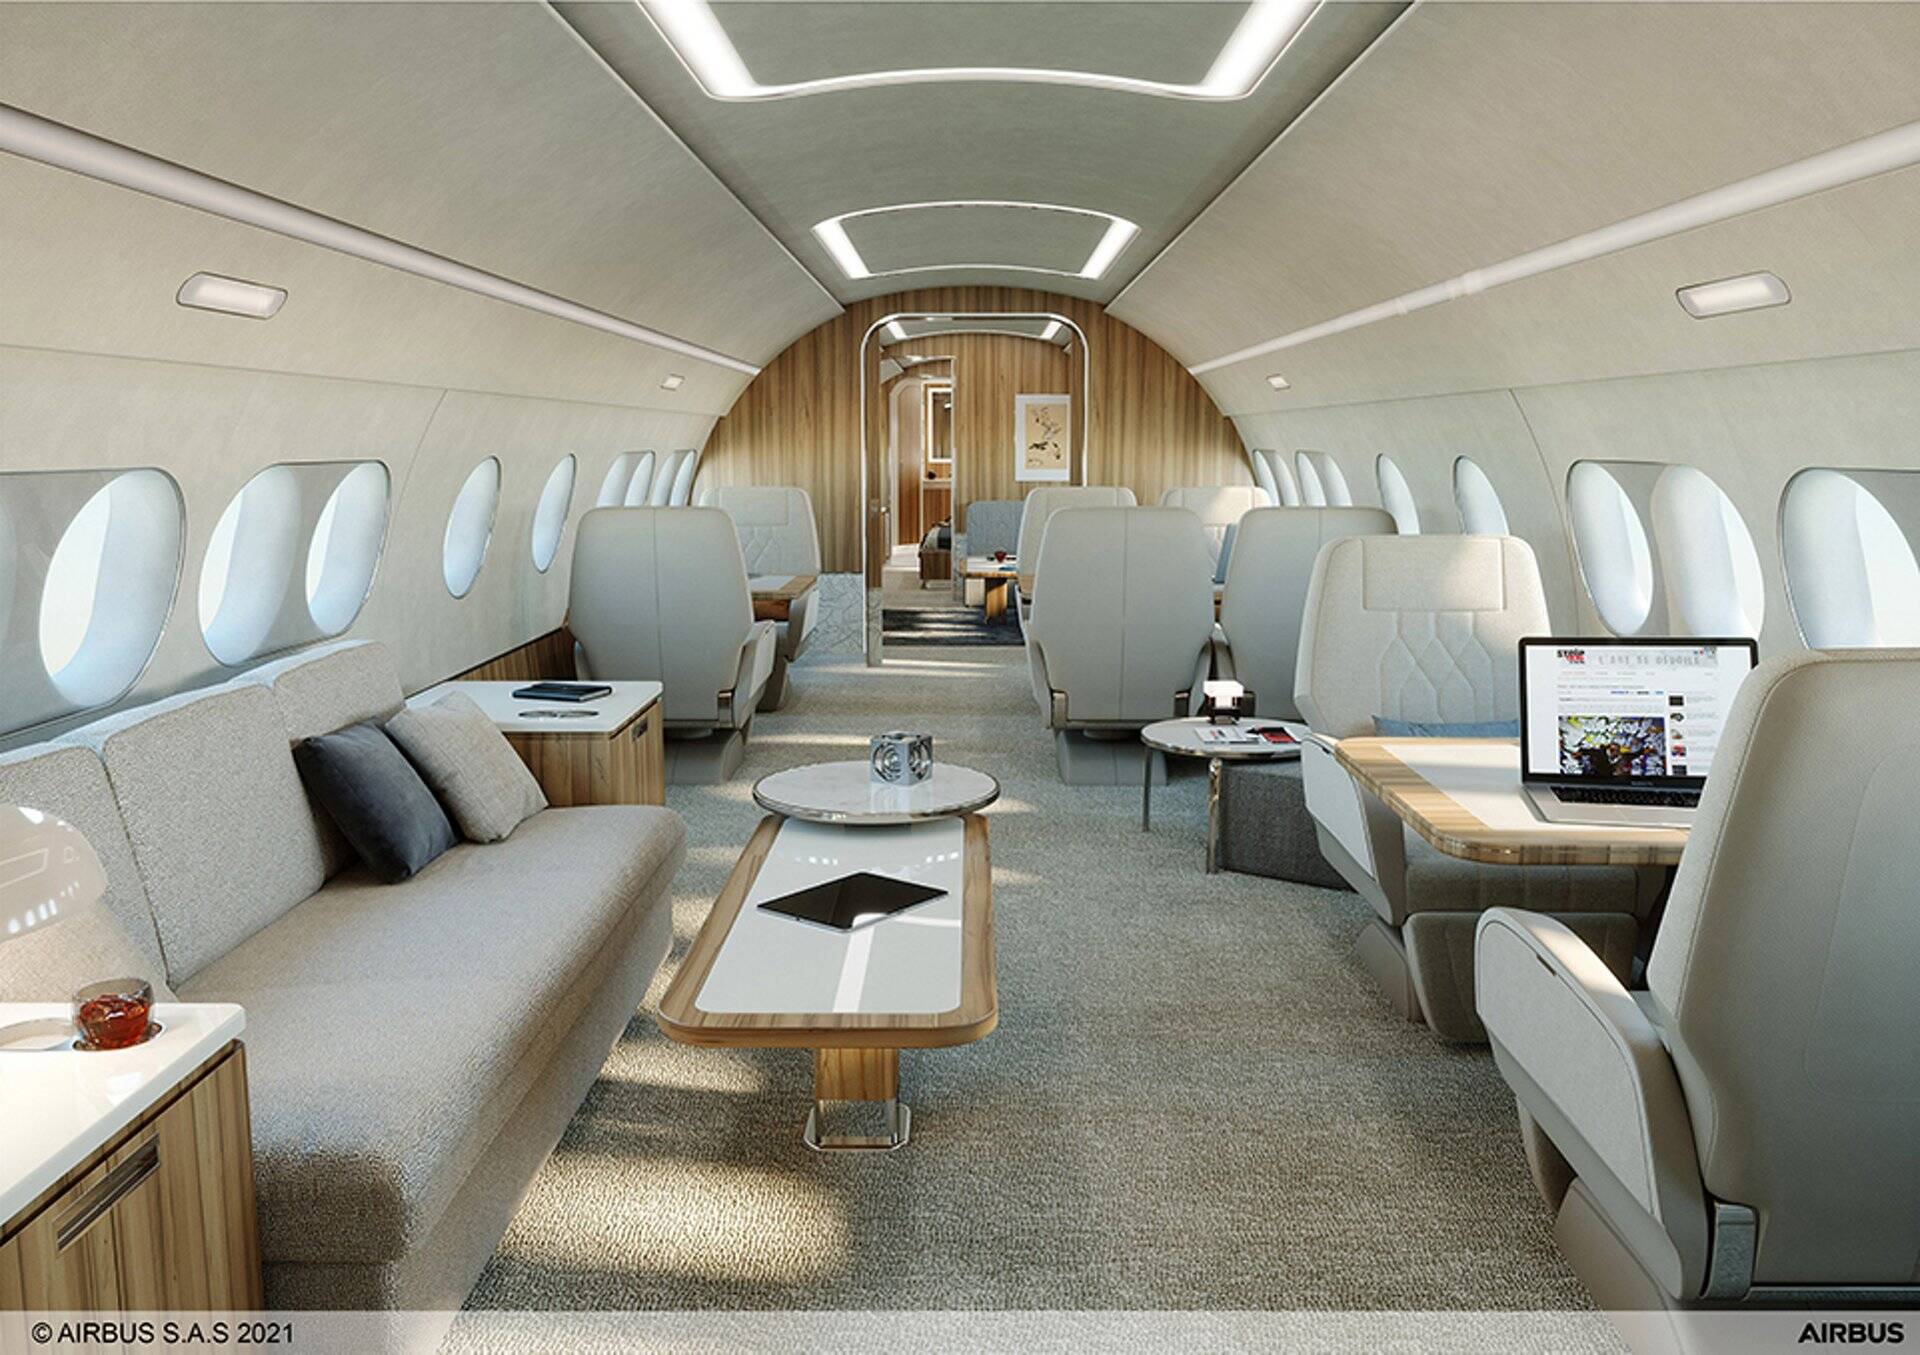 Configurador da Airbus permite criar interior do seu próprio avião